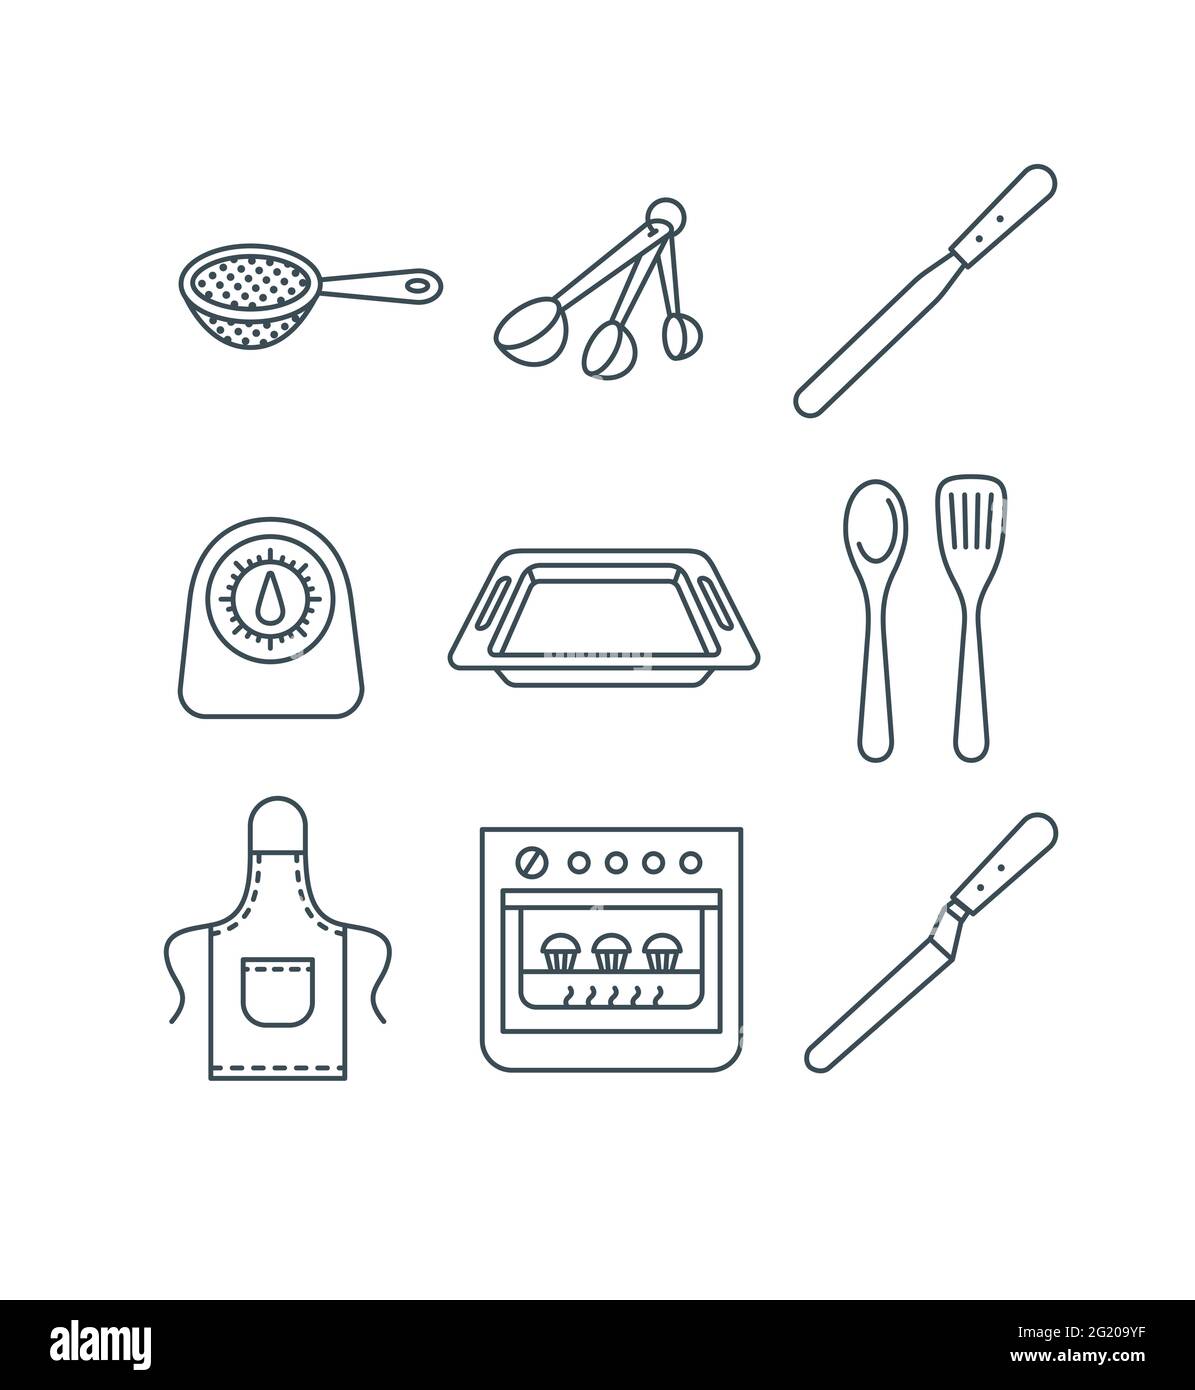 Kit Pasticceria Professionale Utensili per Dolci Utensile da Cucina Set di  Cottura Roba Apparecchiature di Cottura per La Cucina